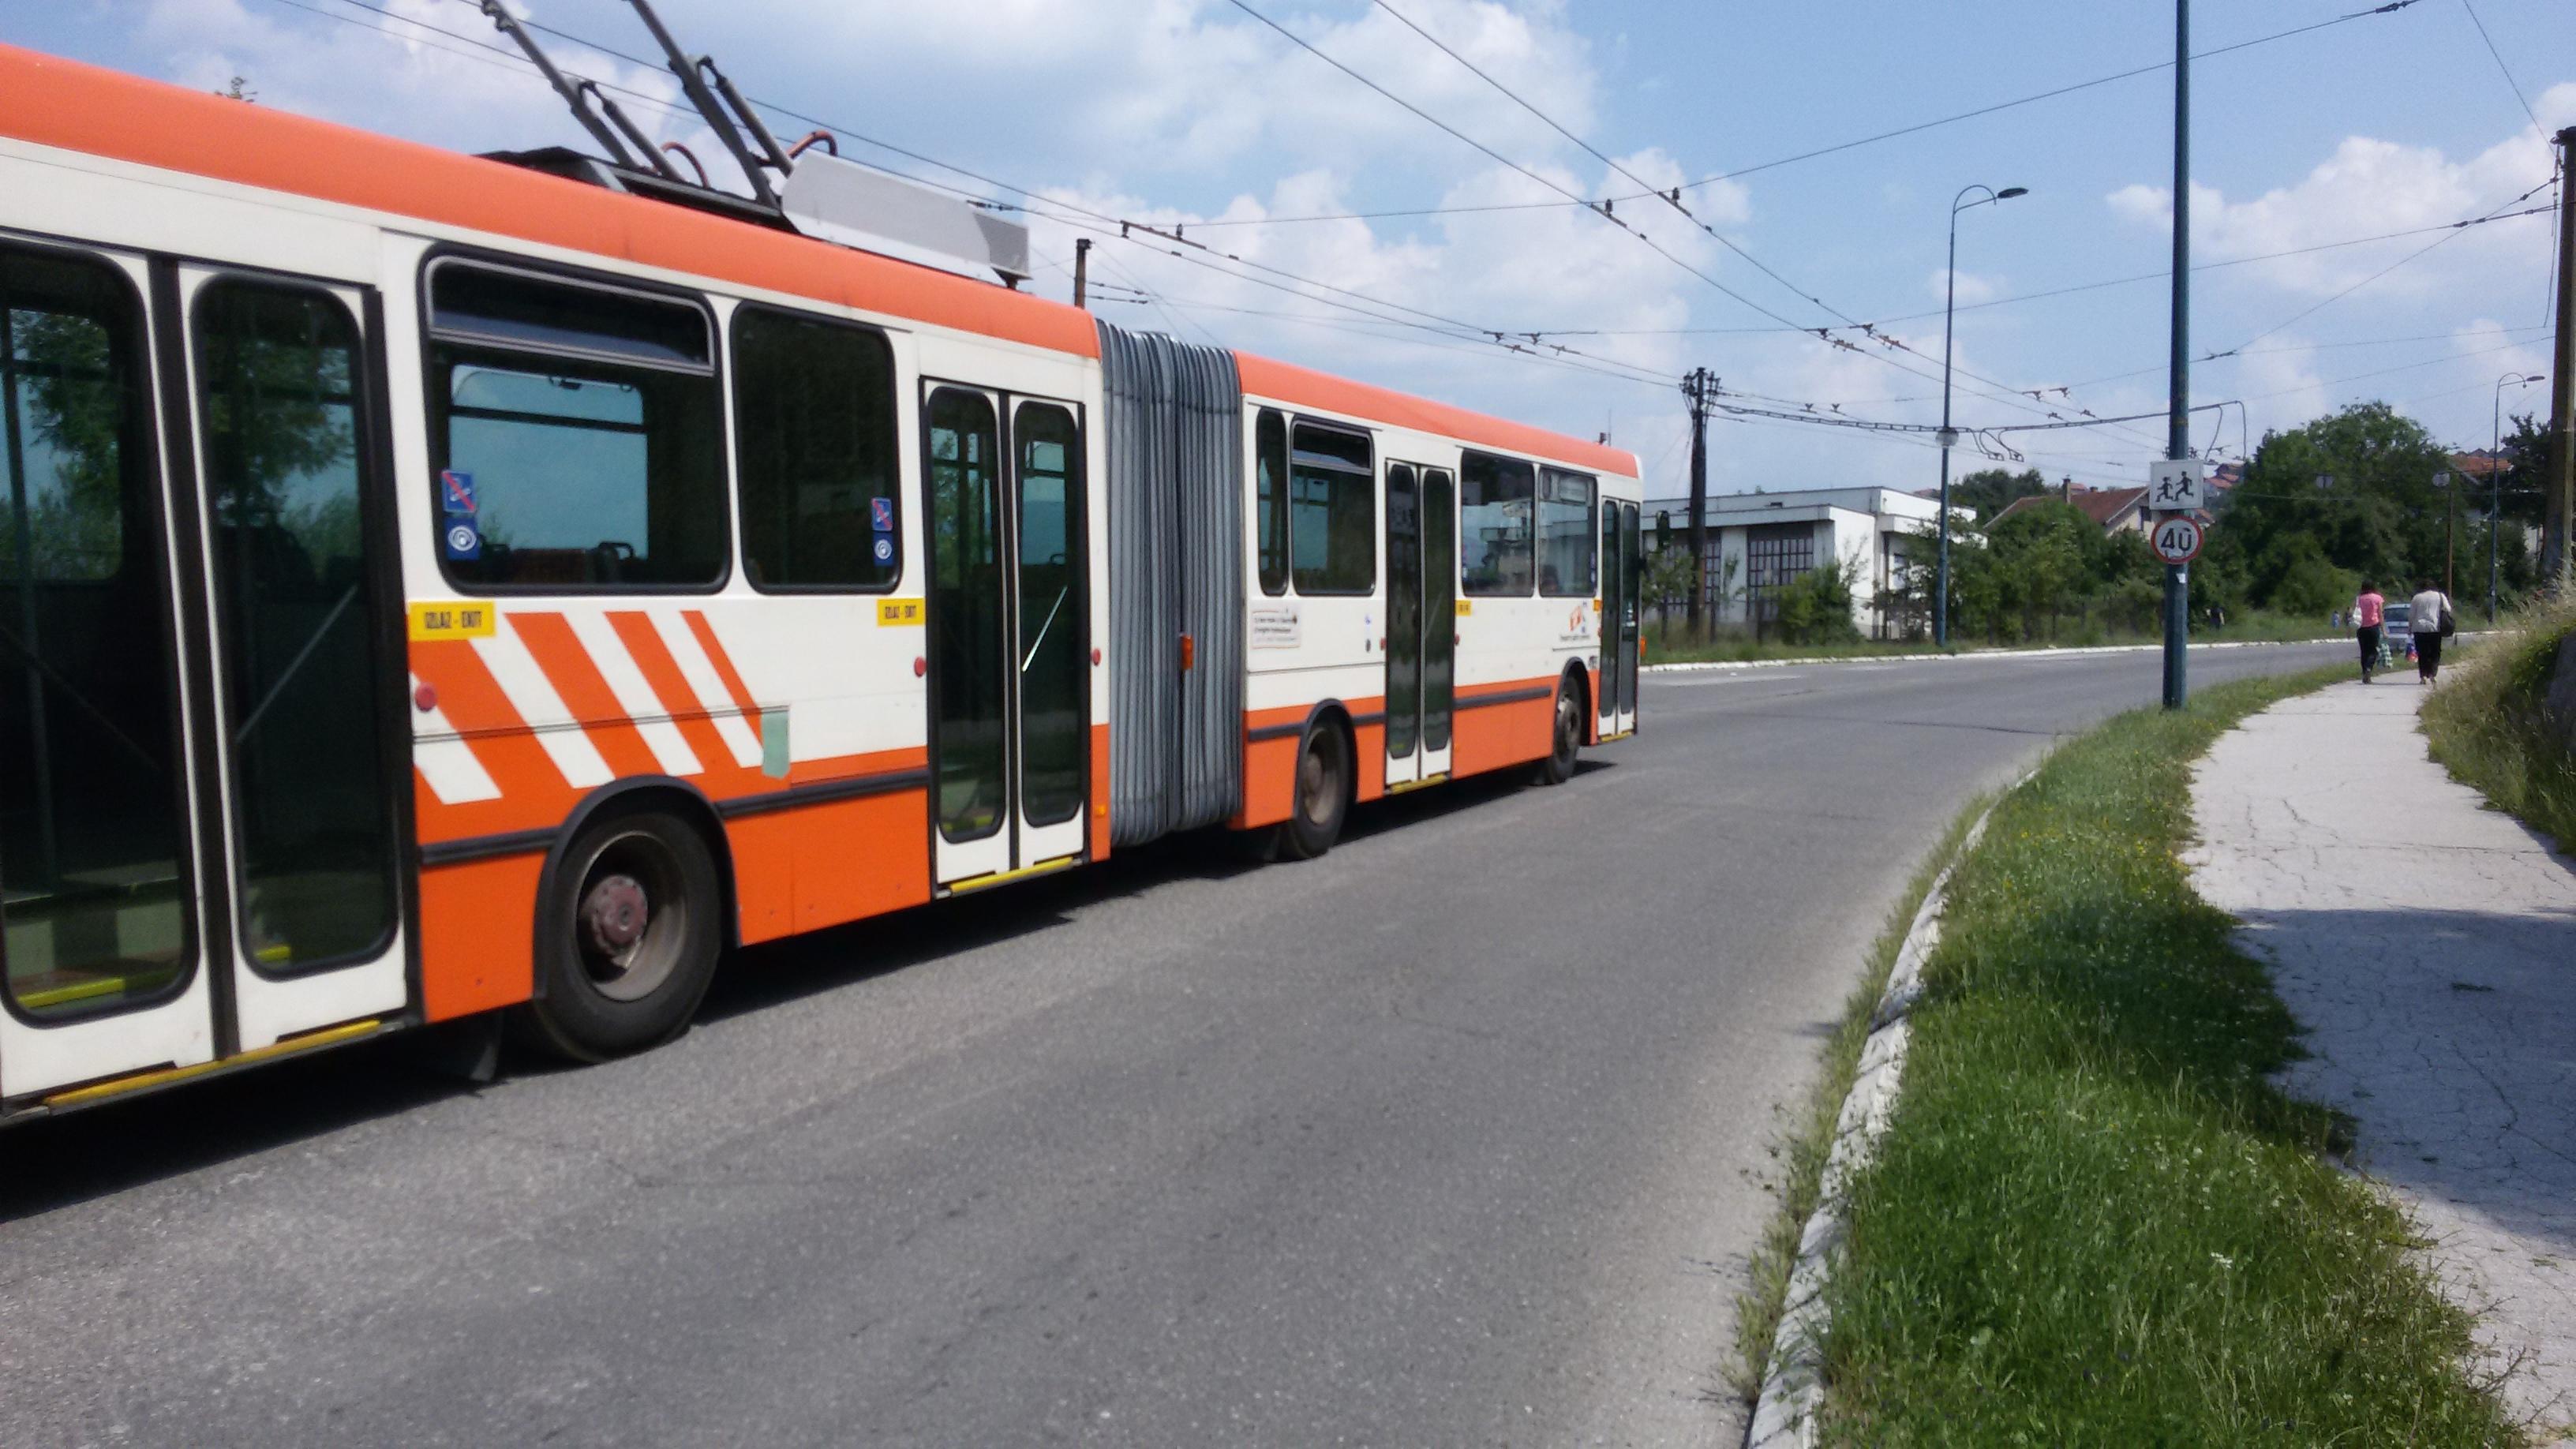 Građanima je dojadilo voziti se u starim trolejbusima - Avaz